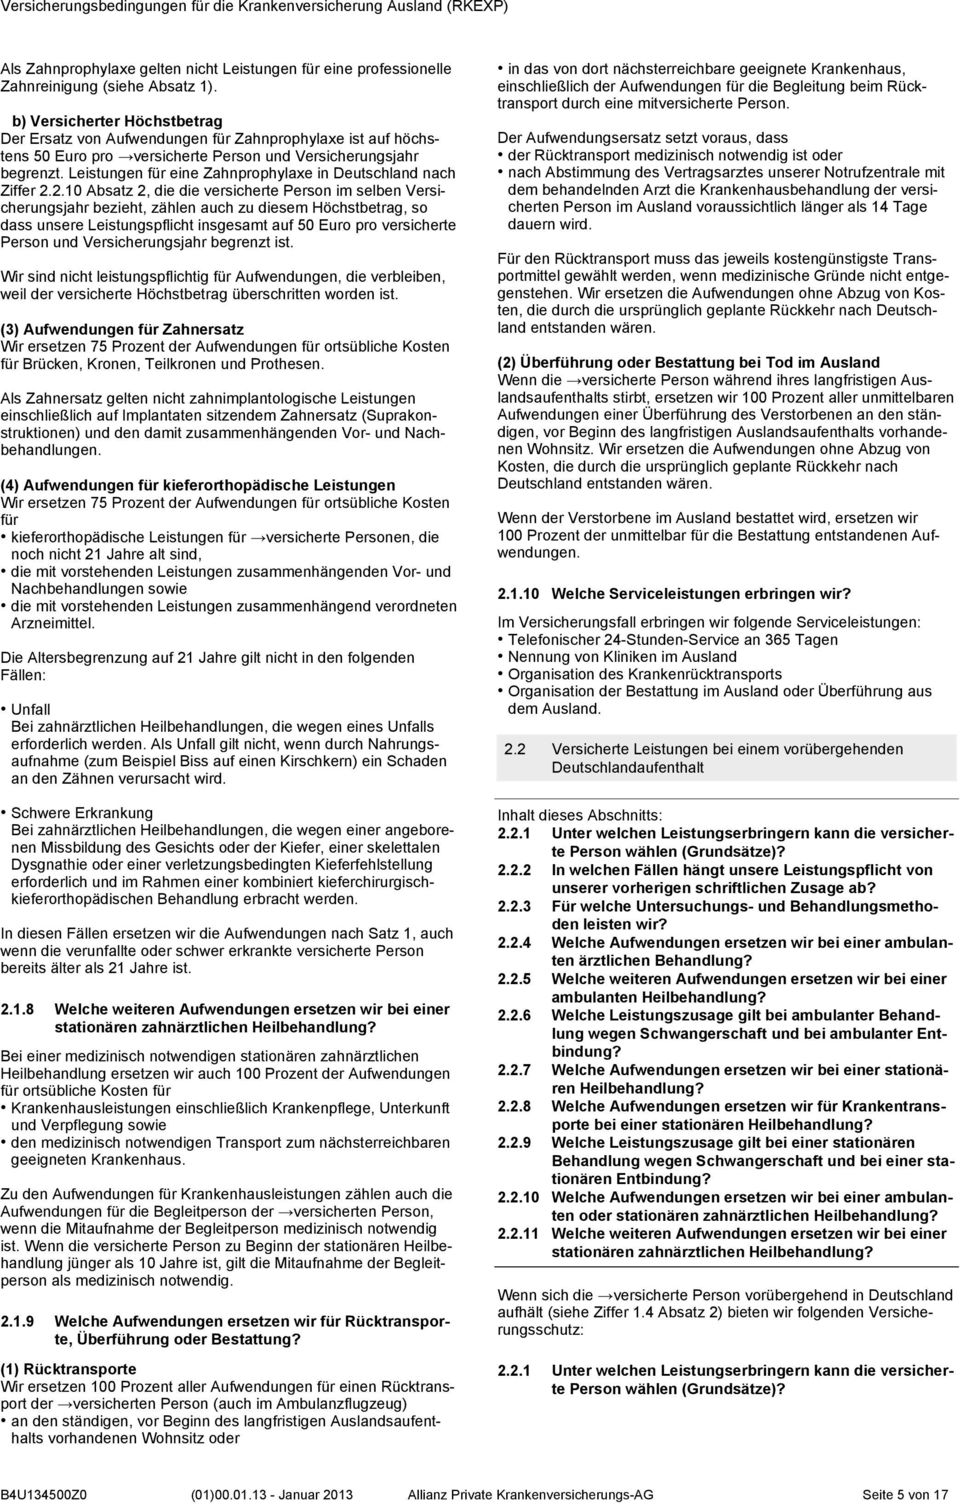 Leistungen für eine Zahnprophylaxe in Deutschland nach Ziffer 2.